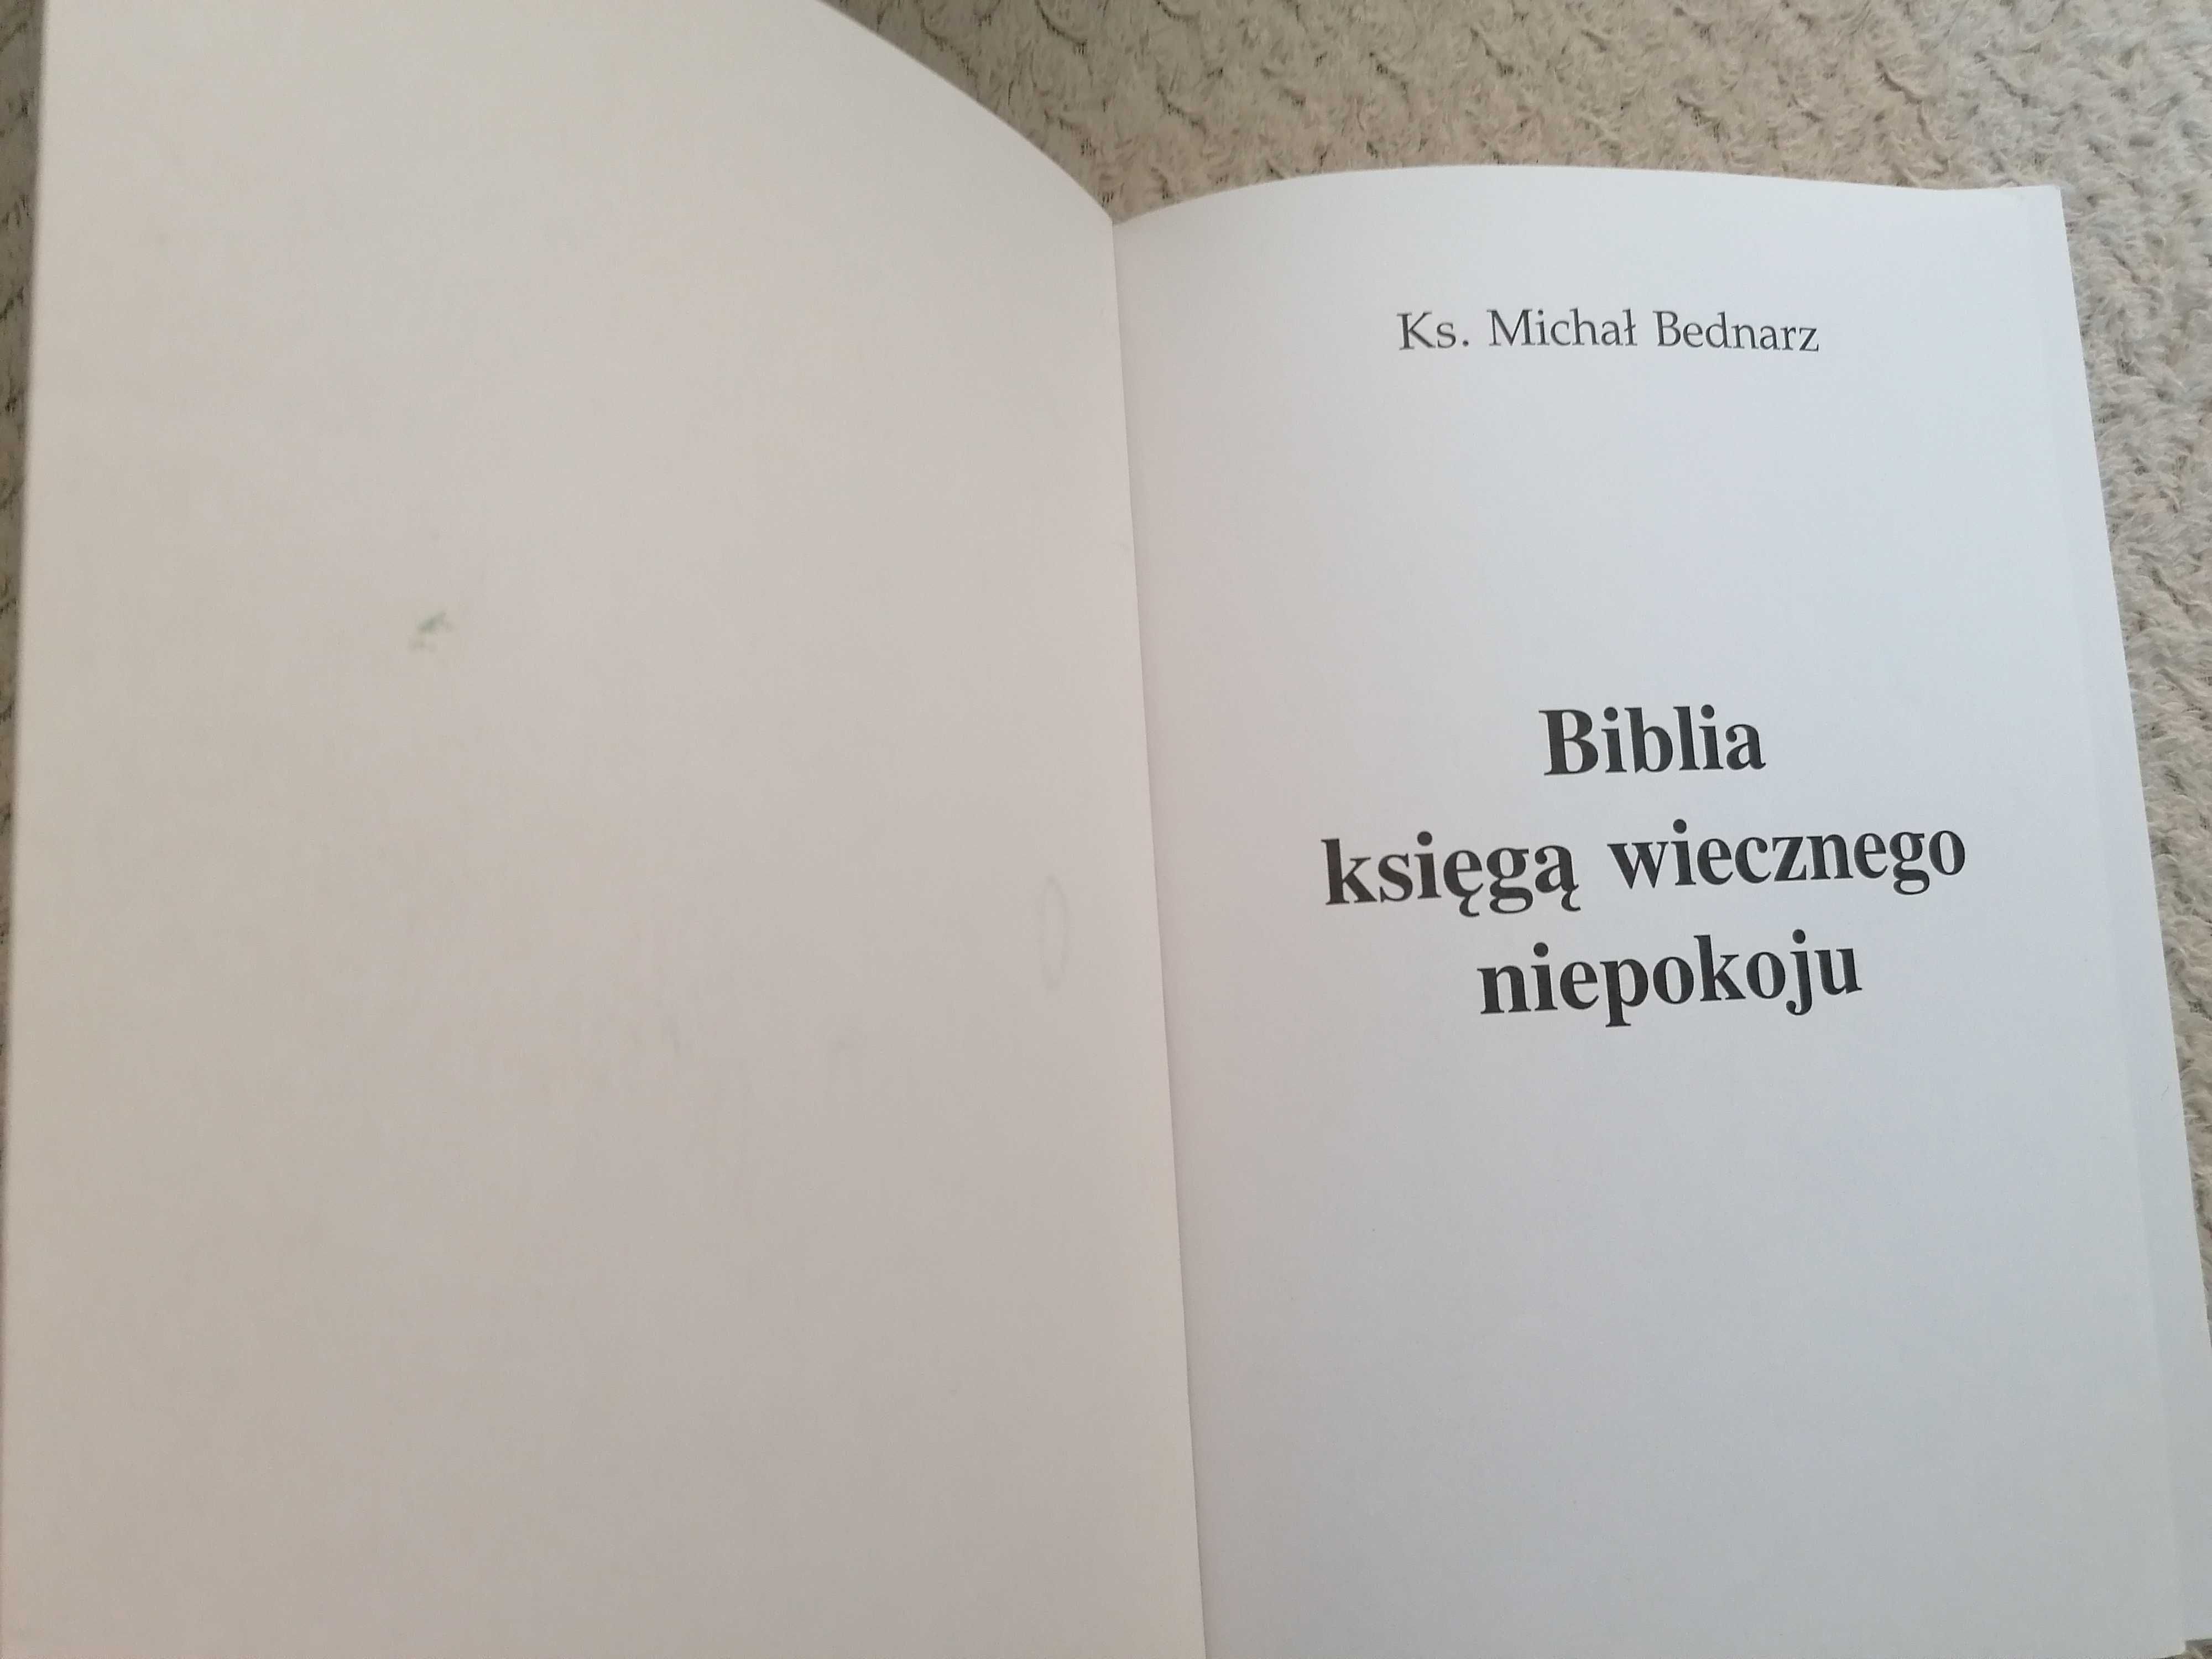 "Biblia księgą wiecznego niepokoju" Ks. Michał Bednarz